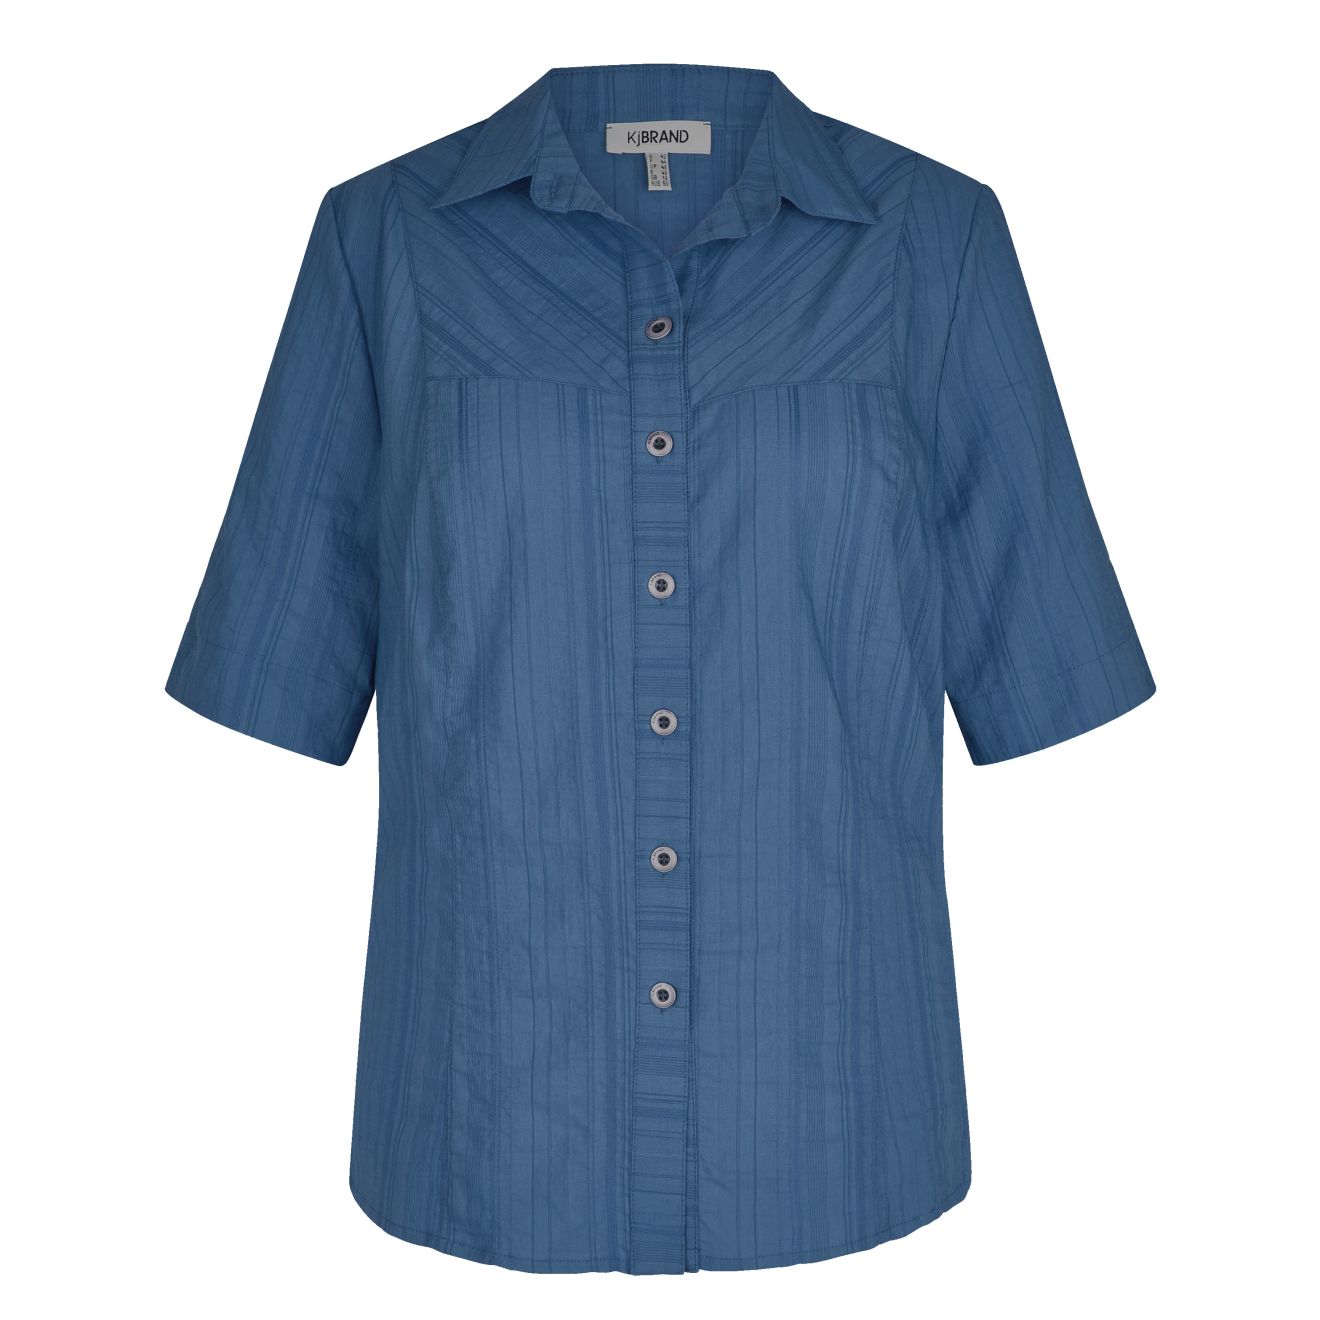 KjBRAND leichte, elastische >wash & wear< Halbarm Hemdbluse mit Knopfleiste  & Kragen, aus leichtem Seersucker-Stoff, Größe 60-62